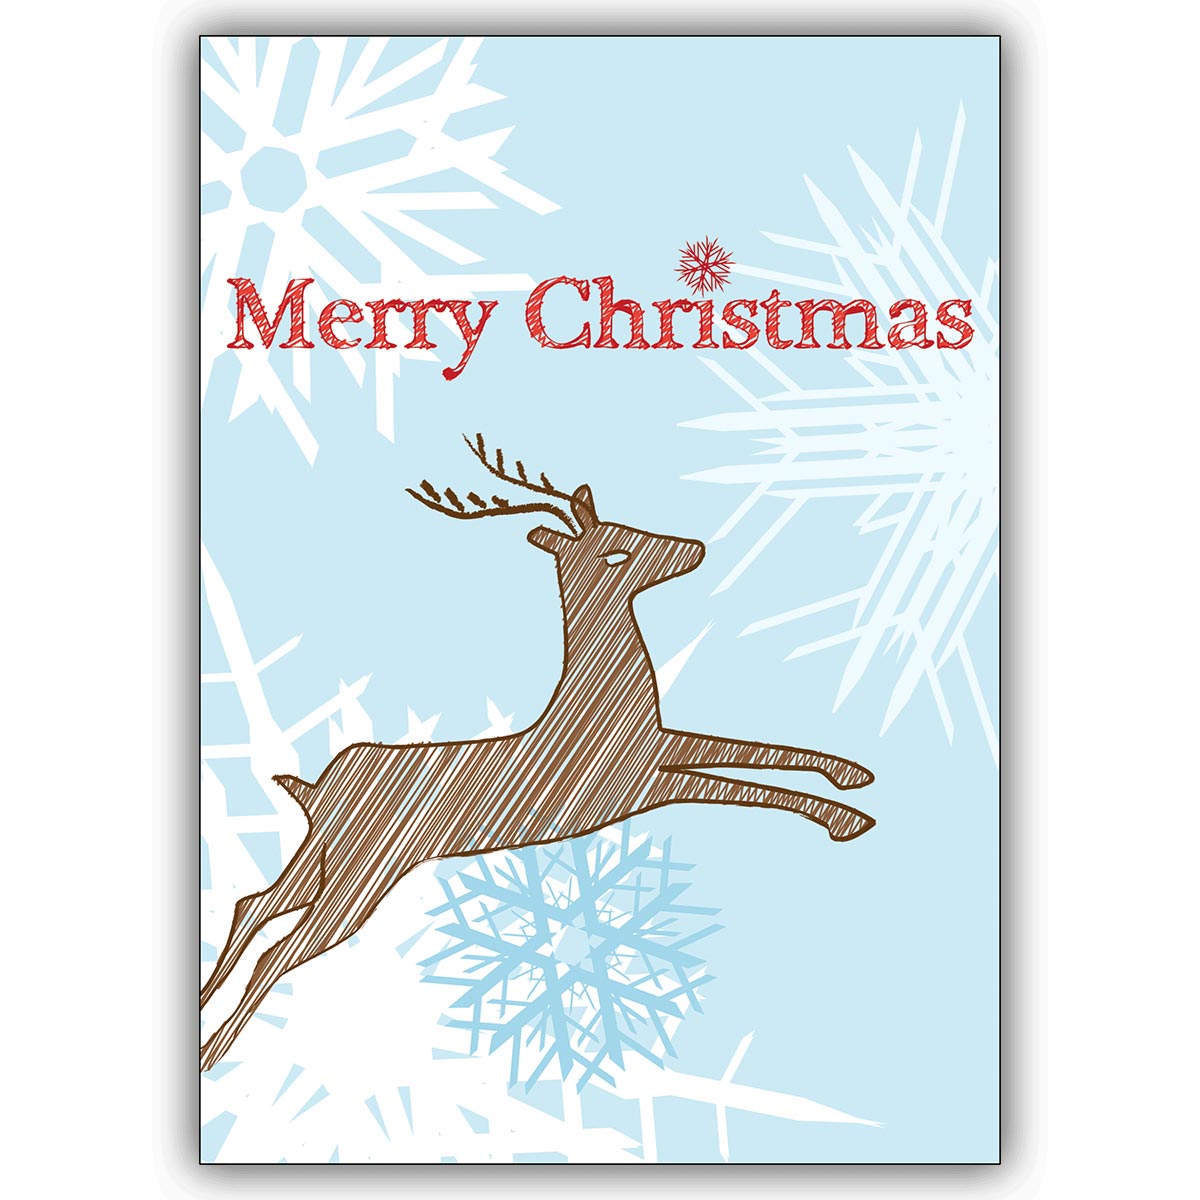 "Merry Christmas" tolle Designer Weihnachtskarte mit Rentier